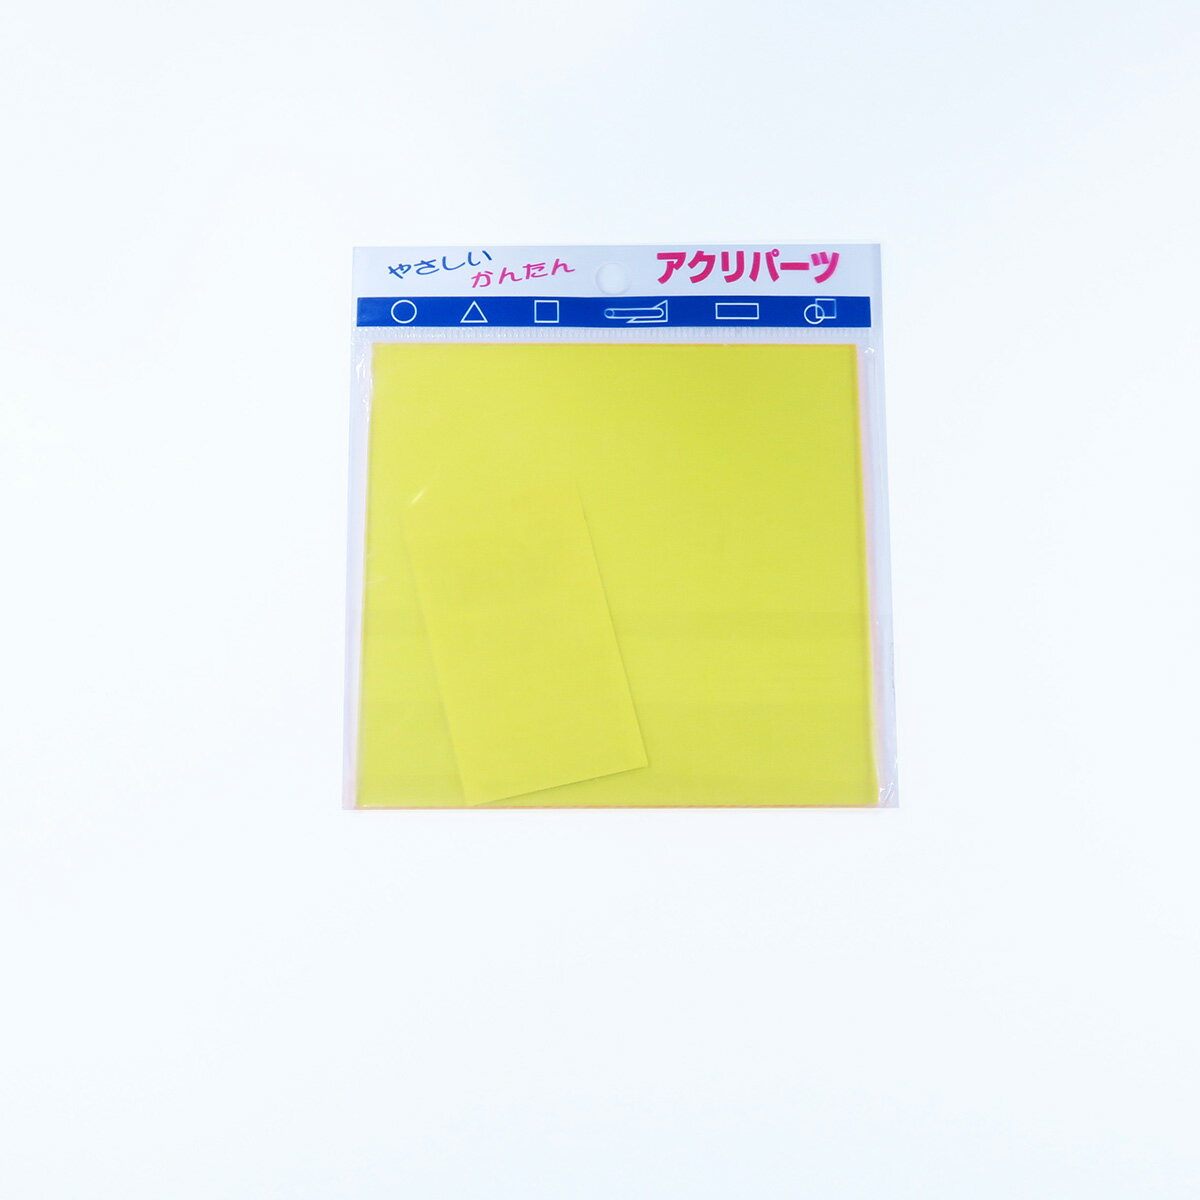 アクリパーツ アクリル 正方形 レモン透明 厚み2mm 100×100mm キャスト板 工作 パーツ 手芸 ハンドメイド プラモデル プラスチック 色板 DIY アクリサンデー